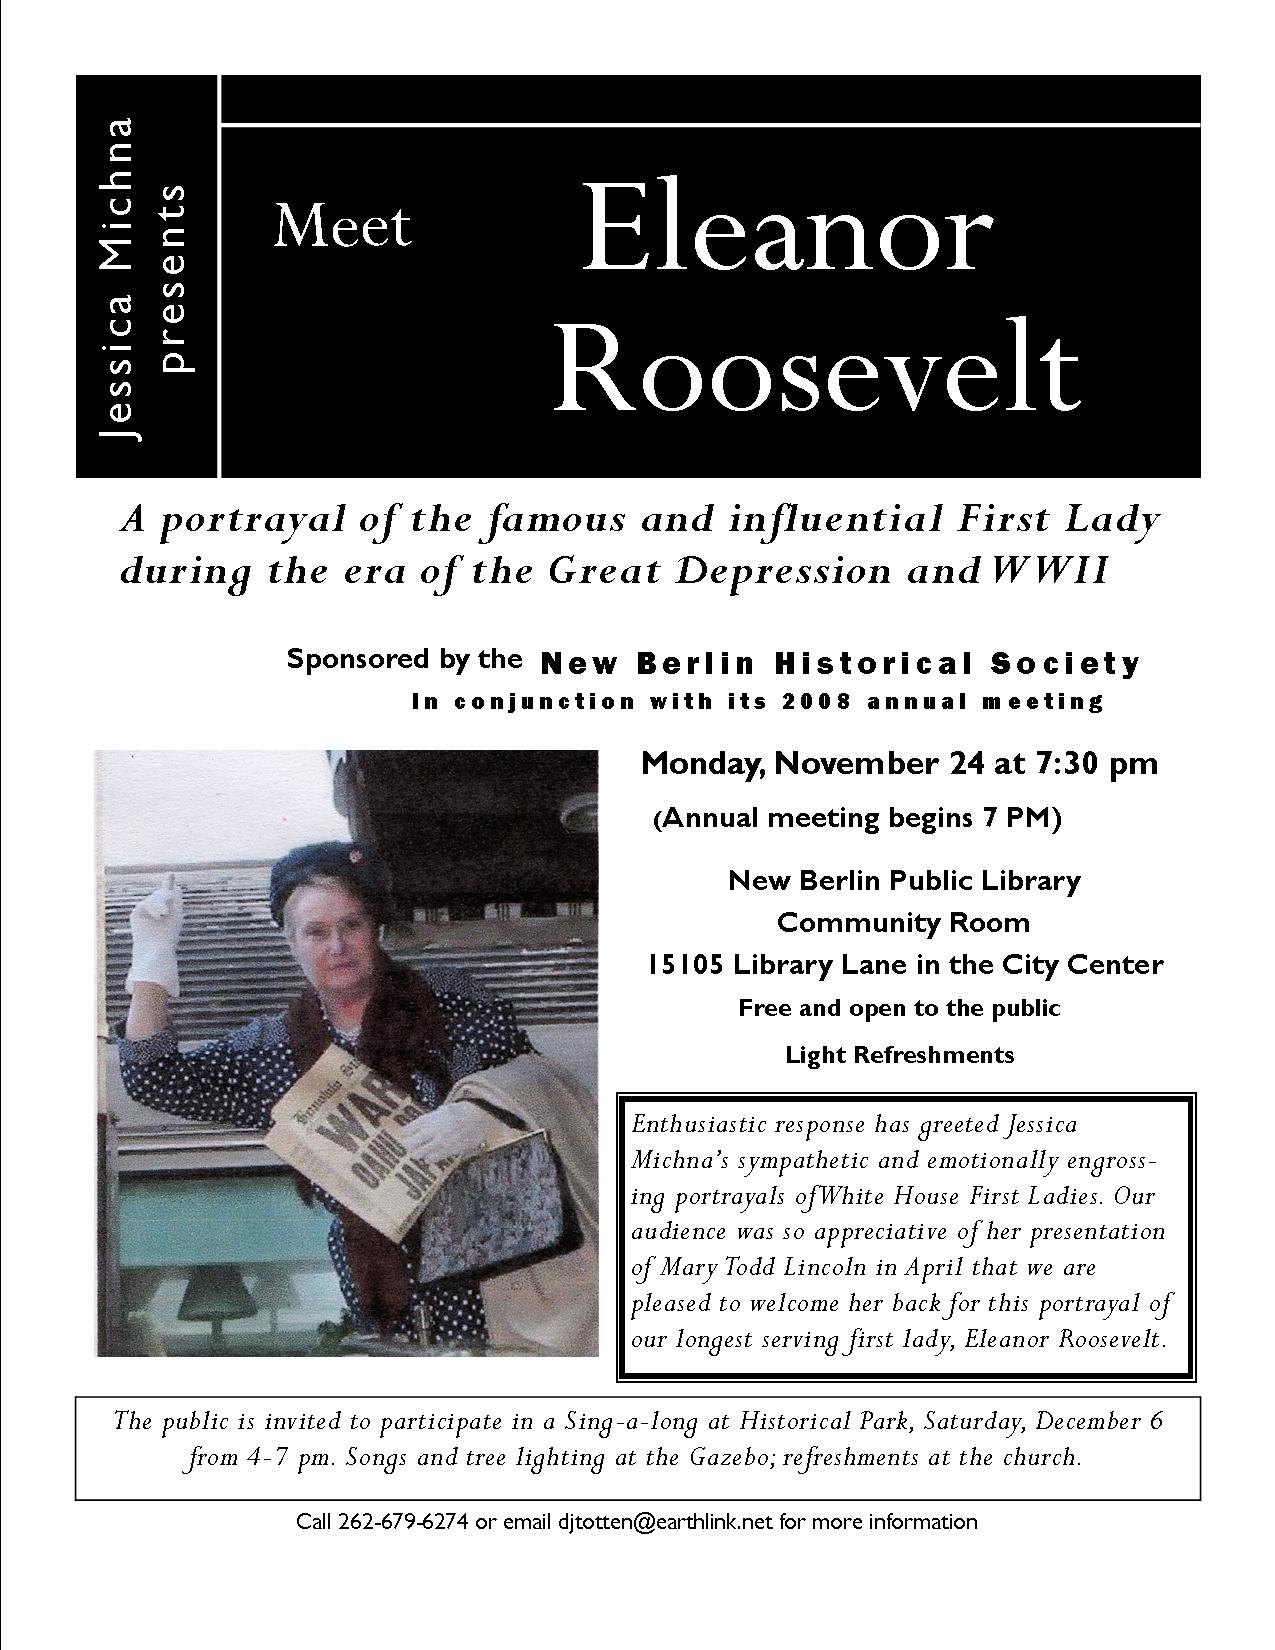 meet Eleanor Roosevelt flyer.jpg